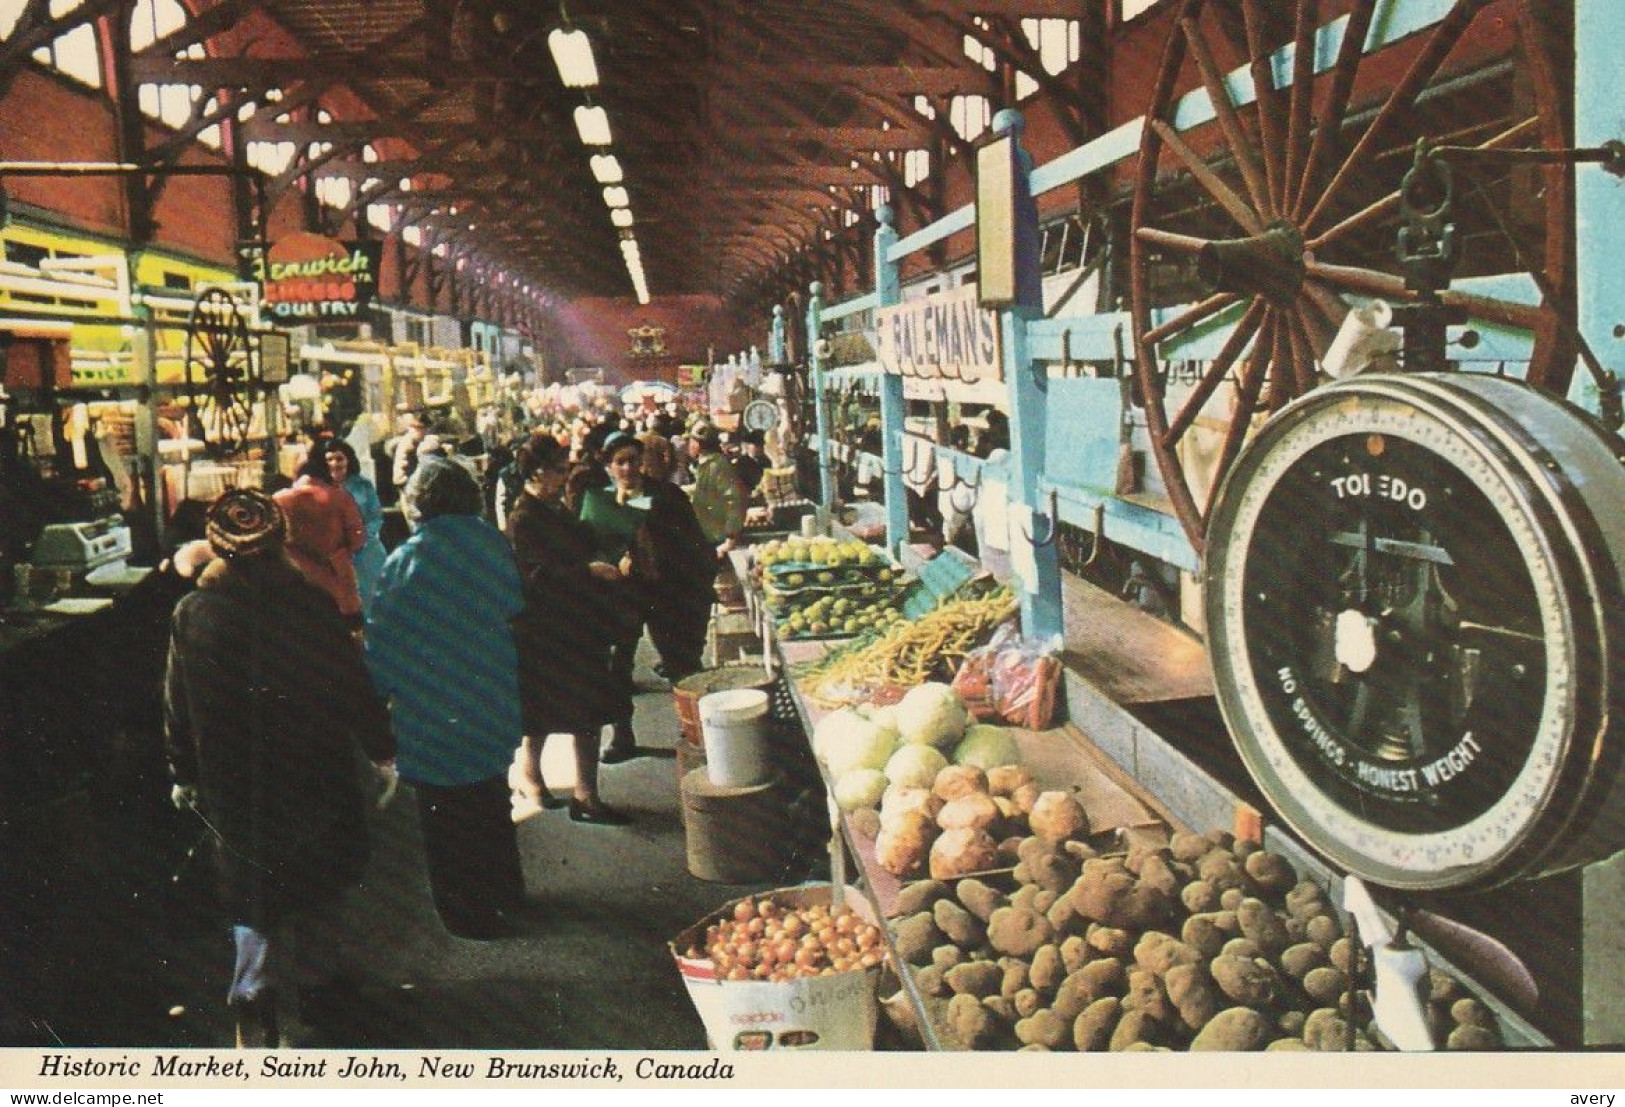 Historic Market, Saint John, New Brunswick - St. John